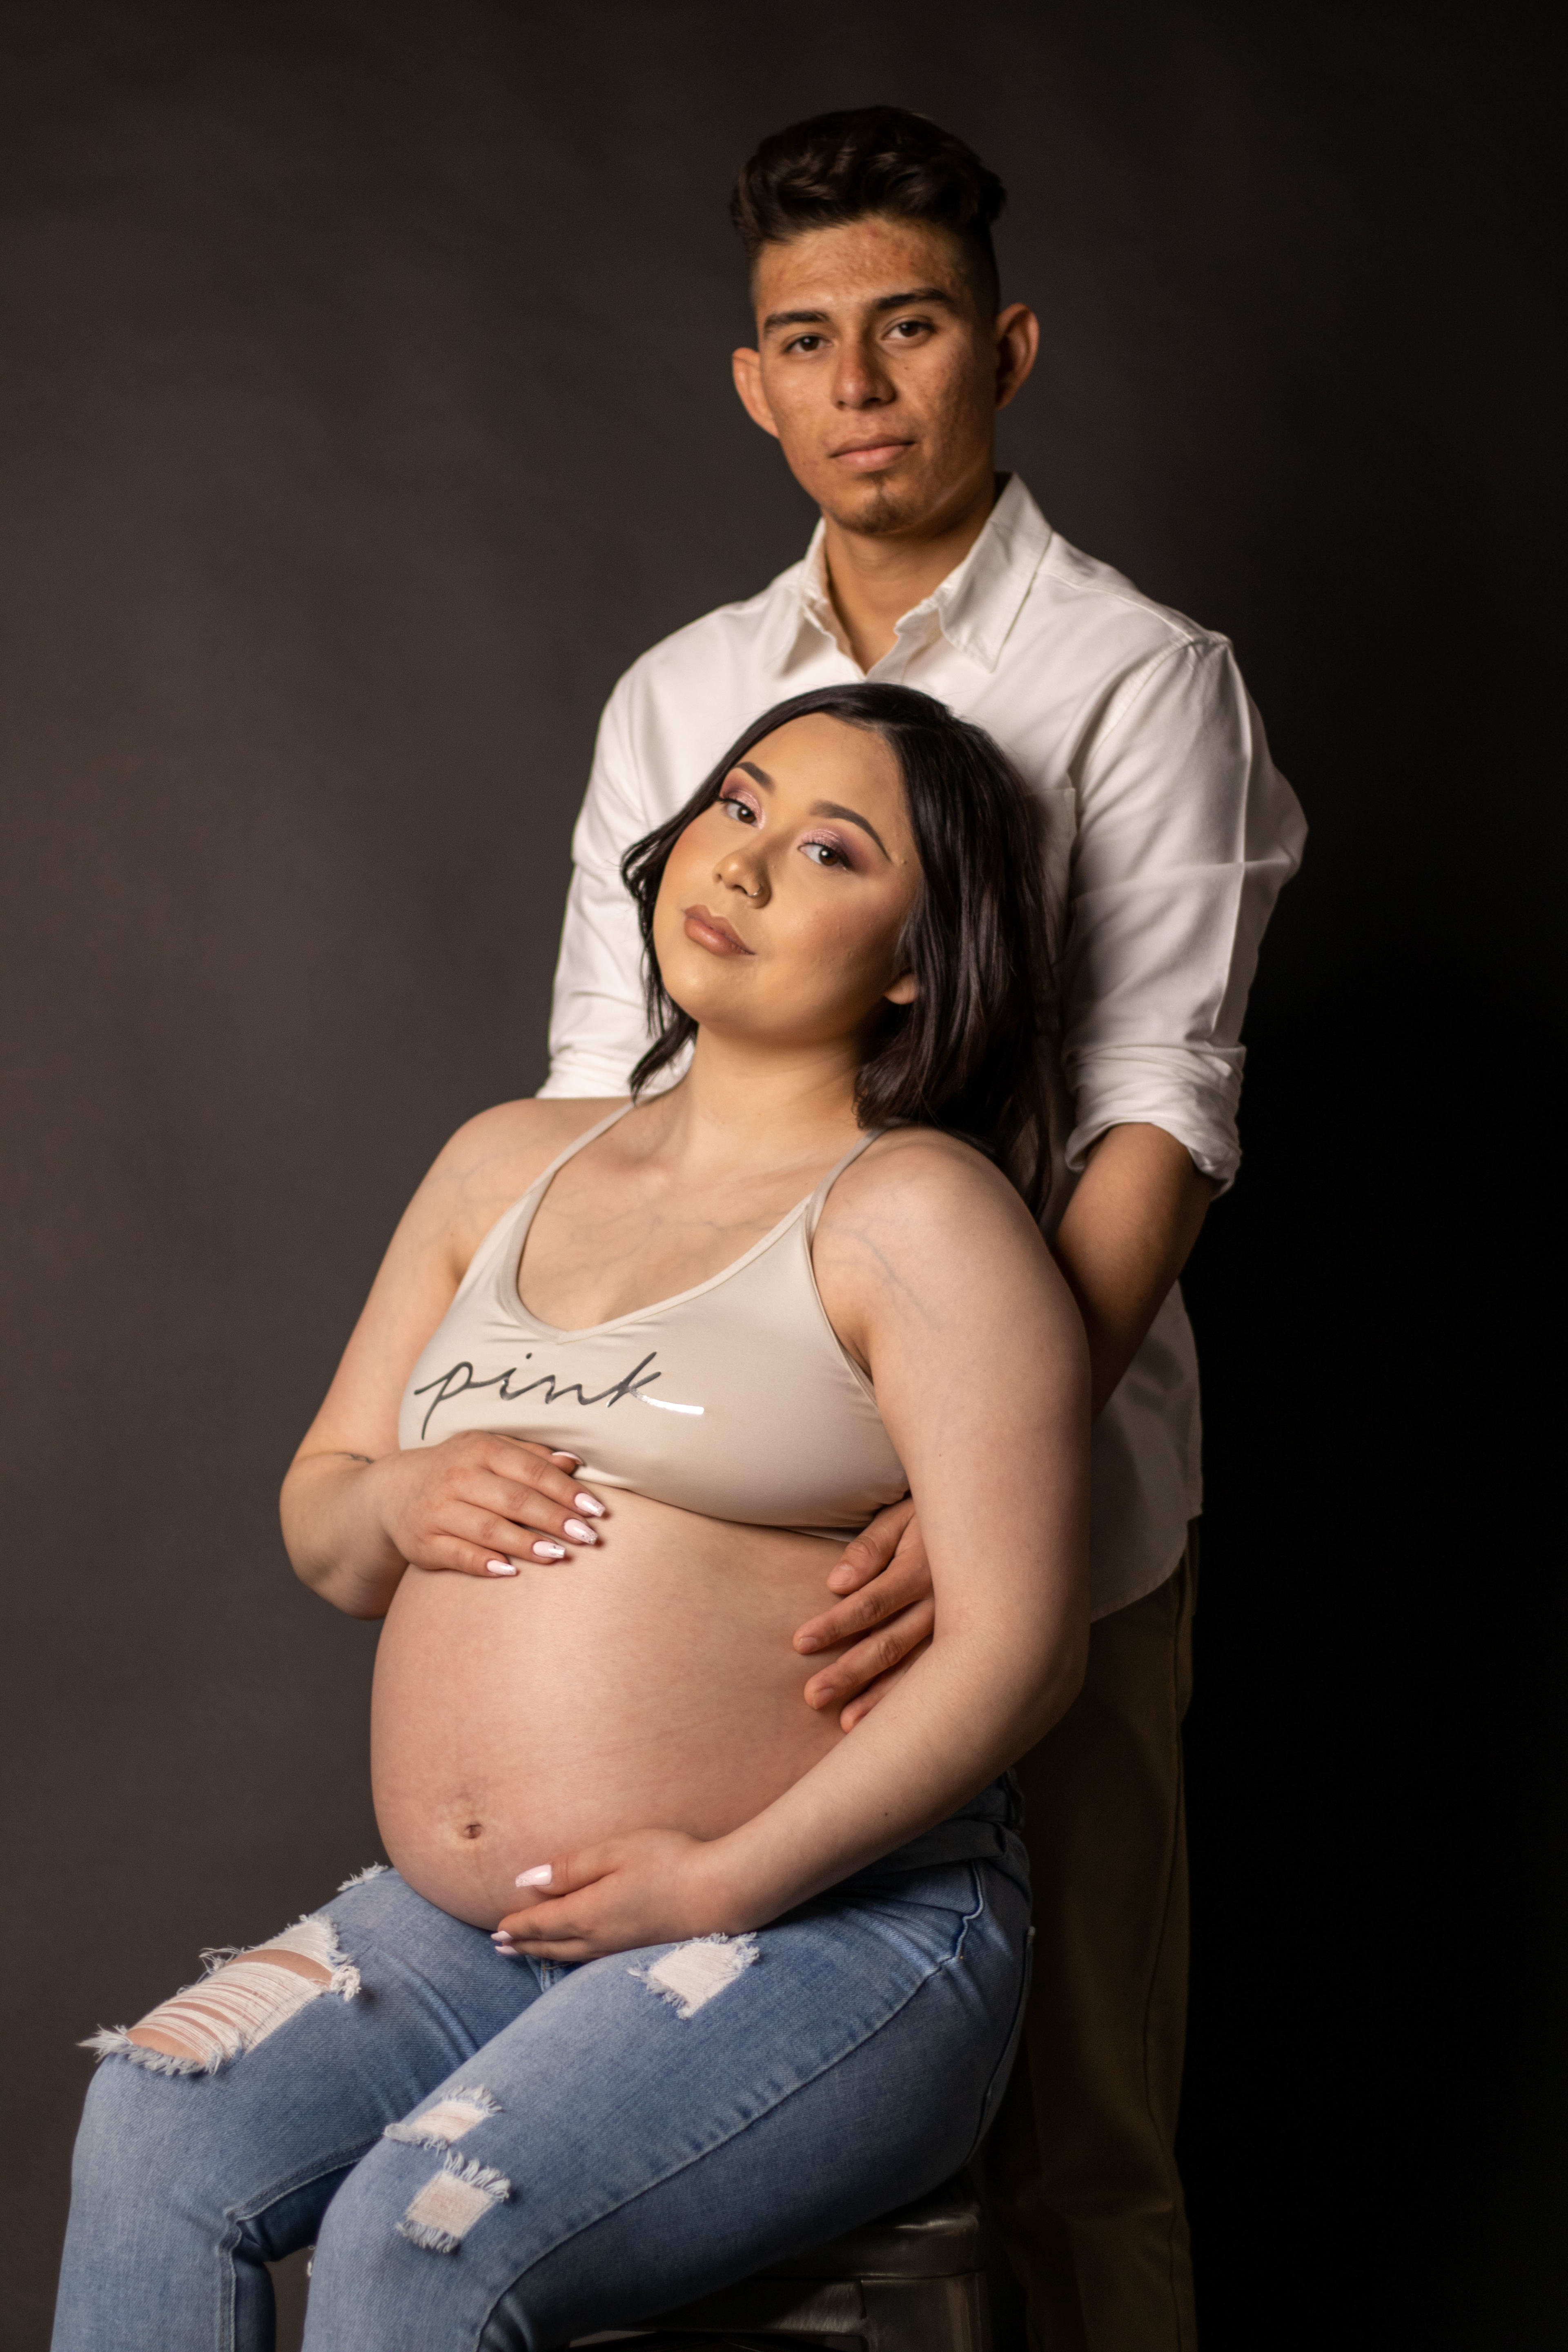 Un shooting photo de maternité d'une femme enceinte sur un tabouret avec un homme la tenant par derrière.